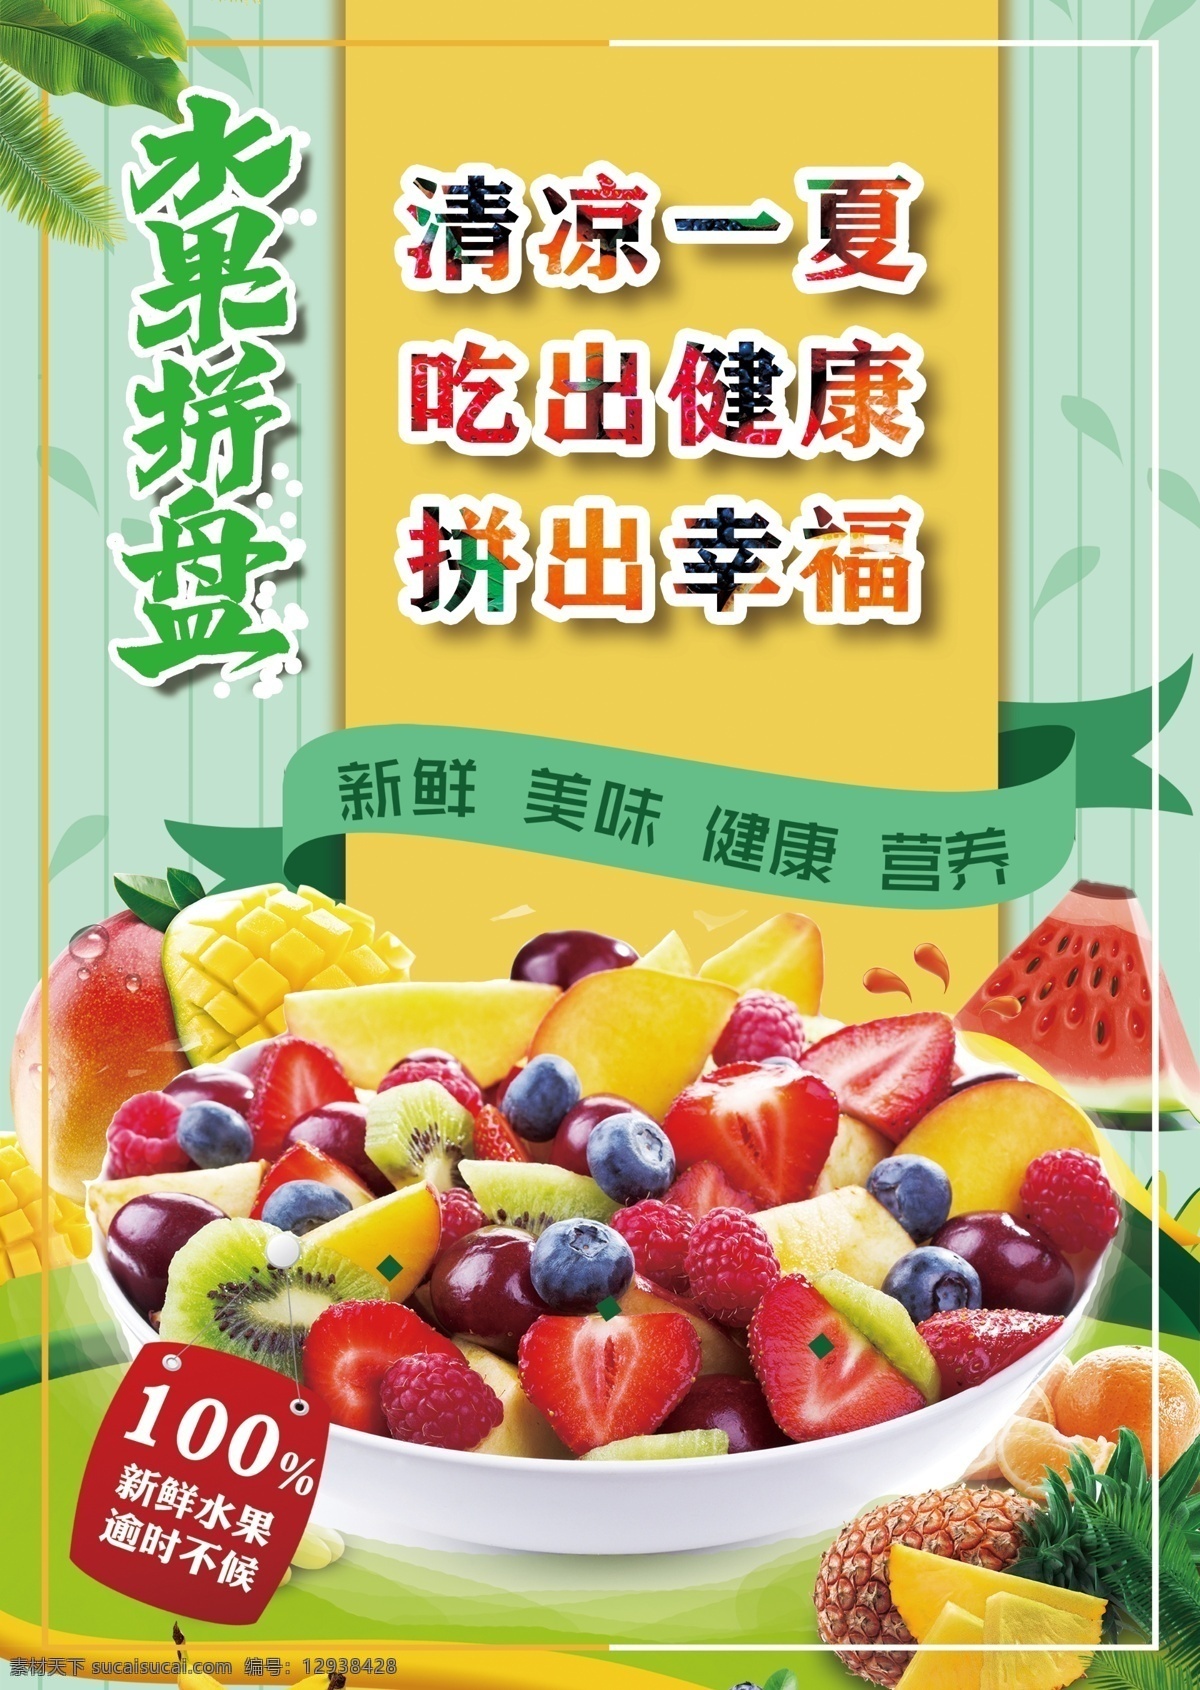 清凉一夏1 吃出健康1 拼出幸福1 水果季水果 水果拼盘1